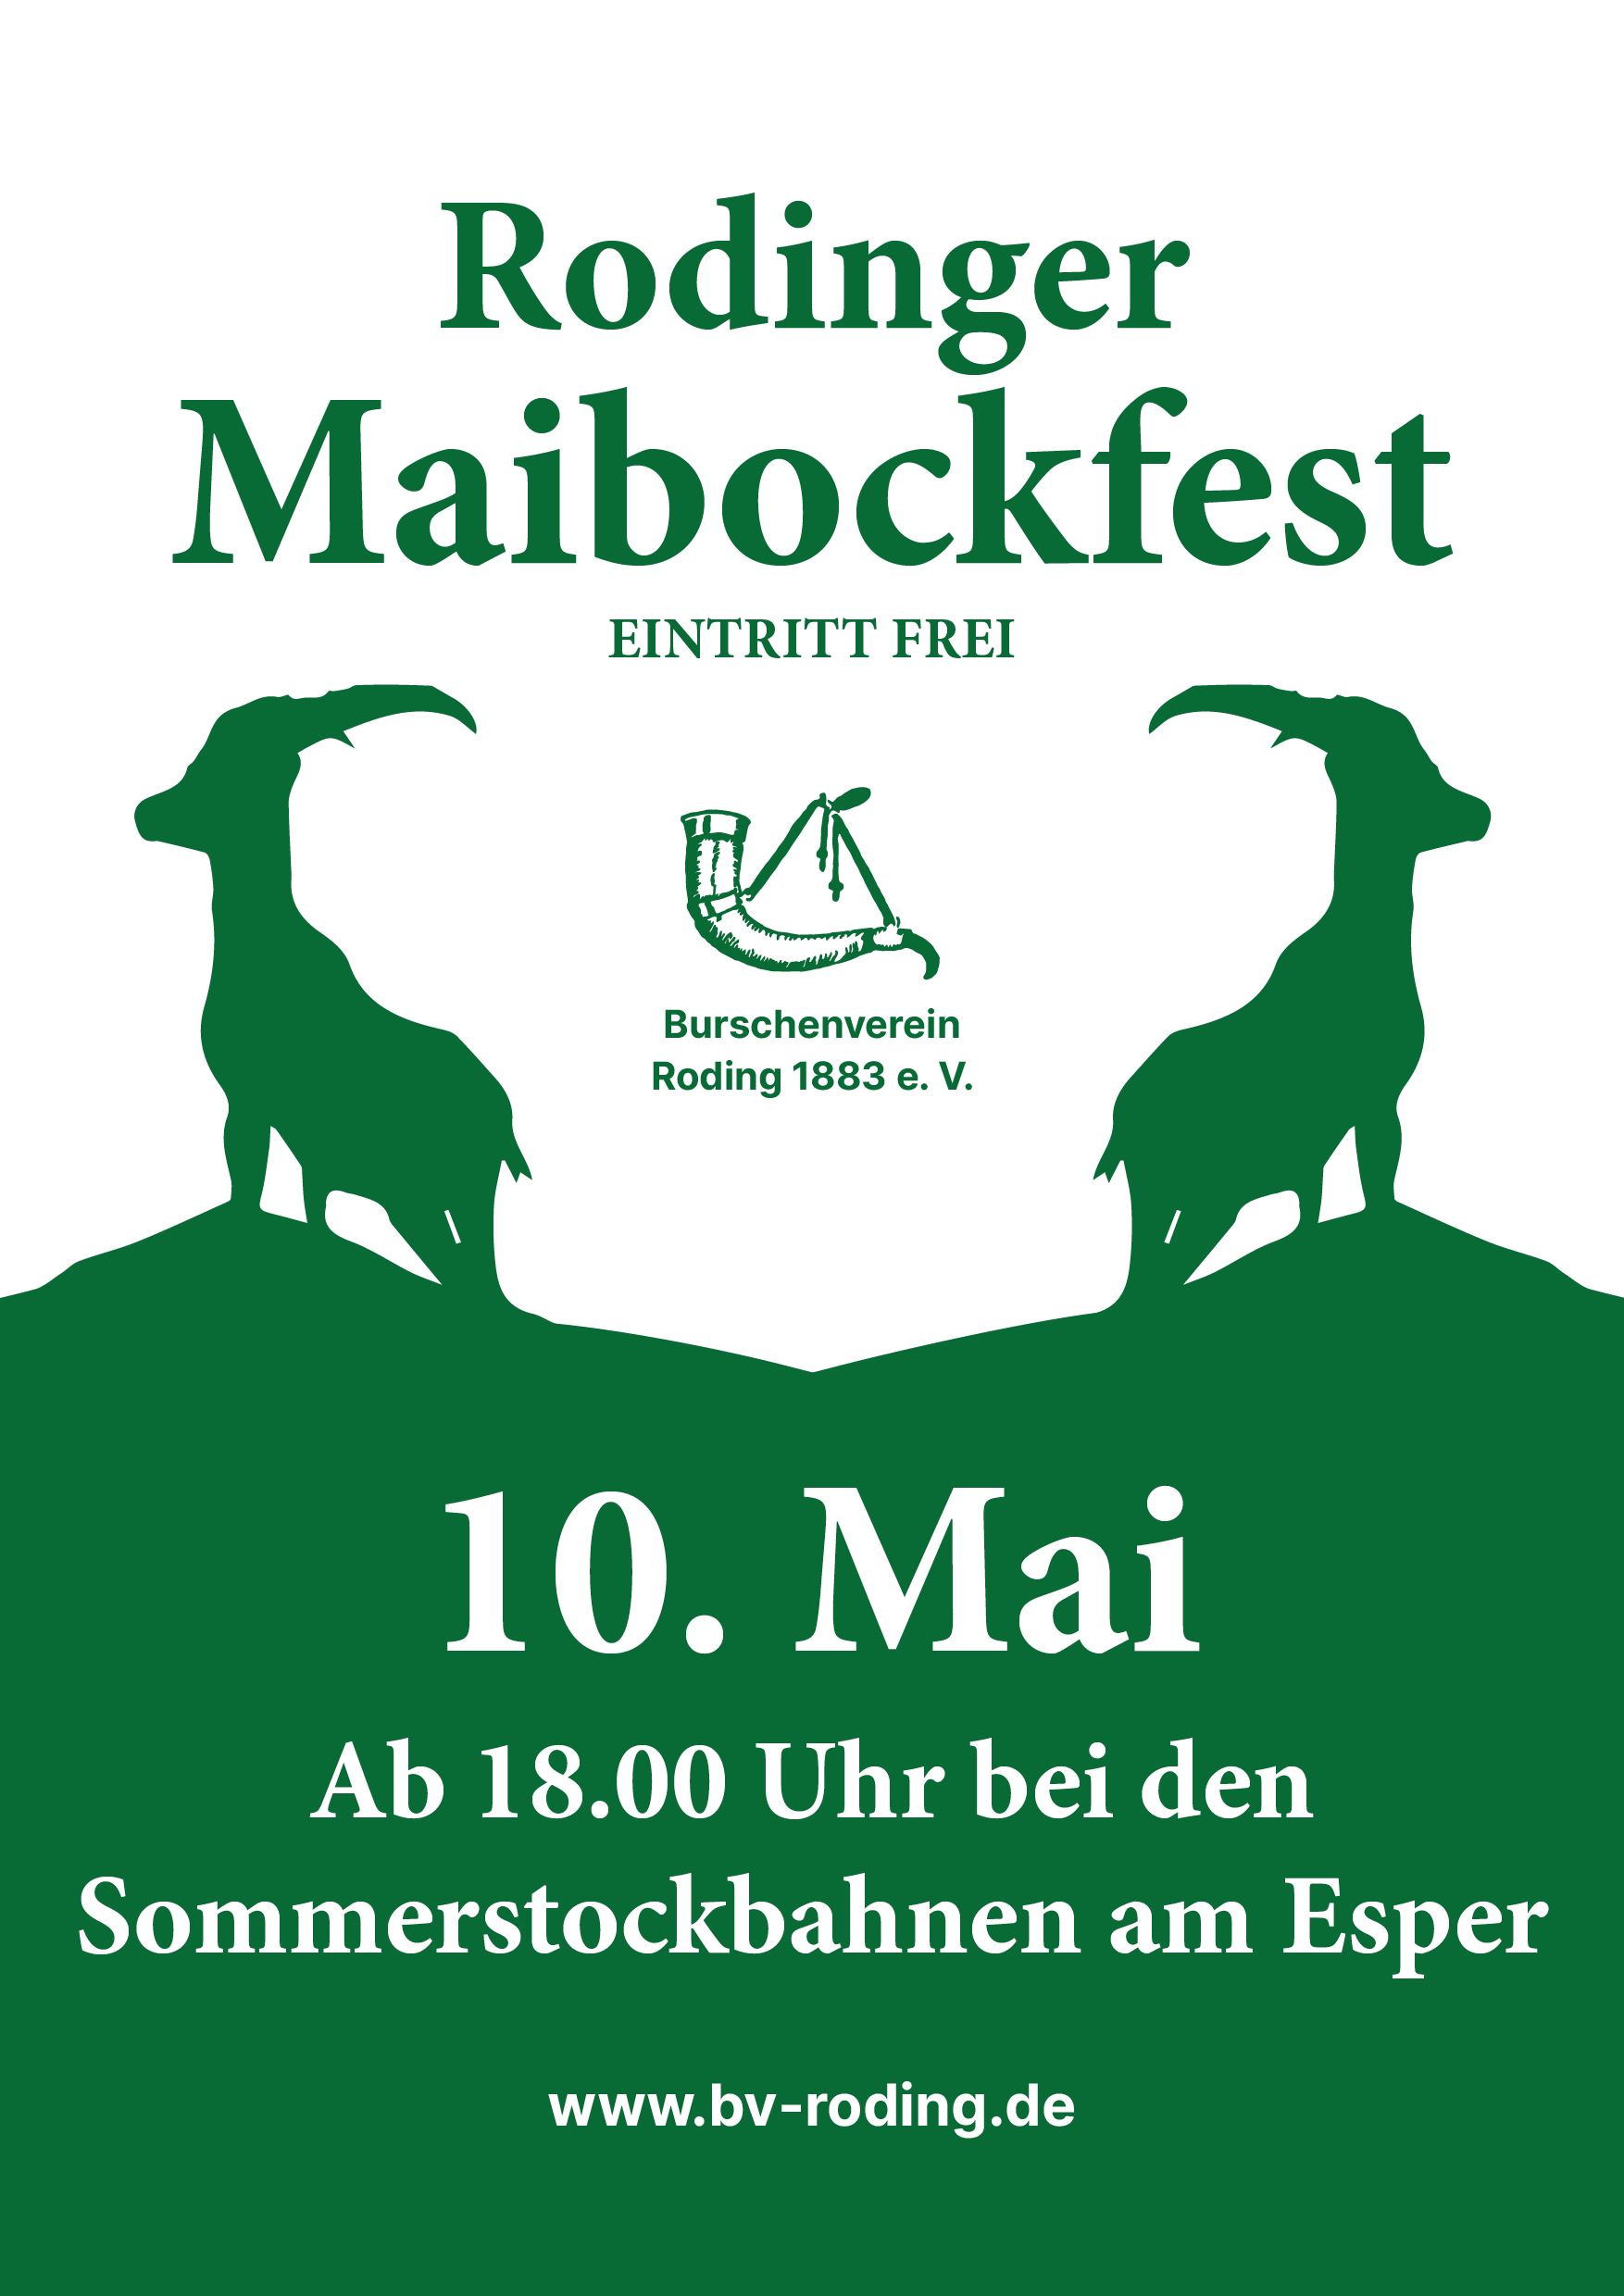 Bockbierfest